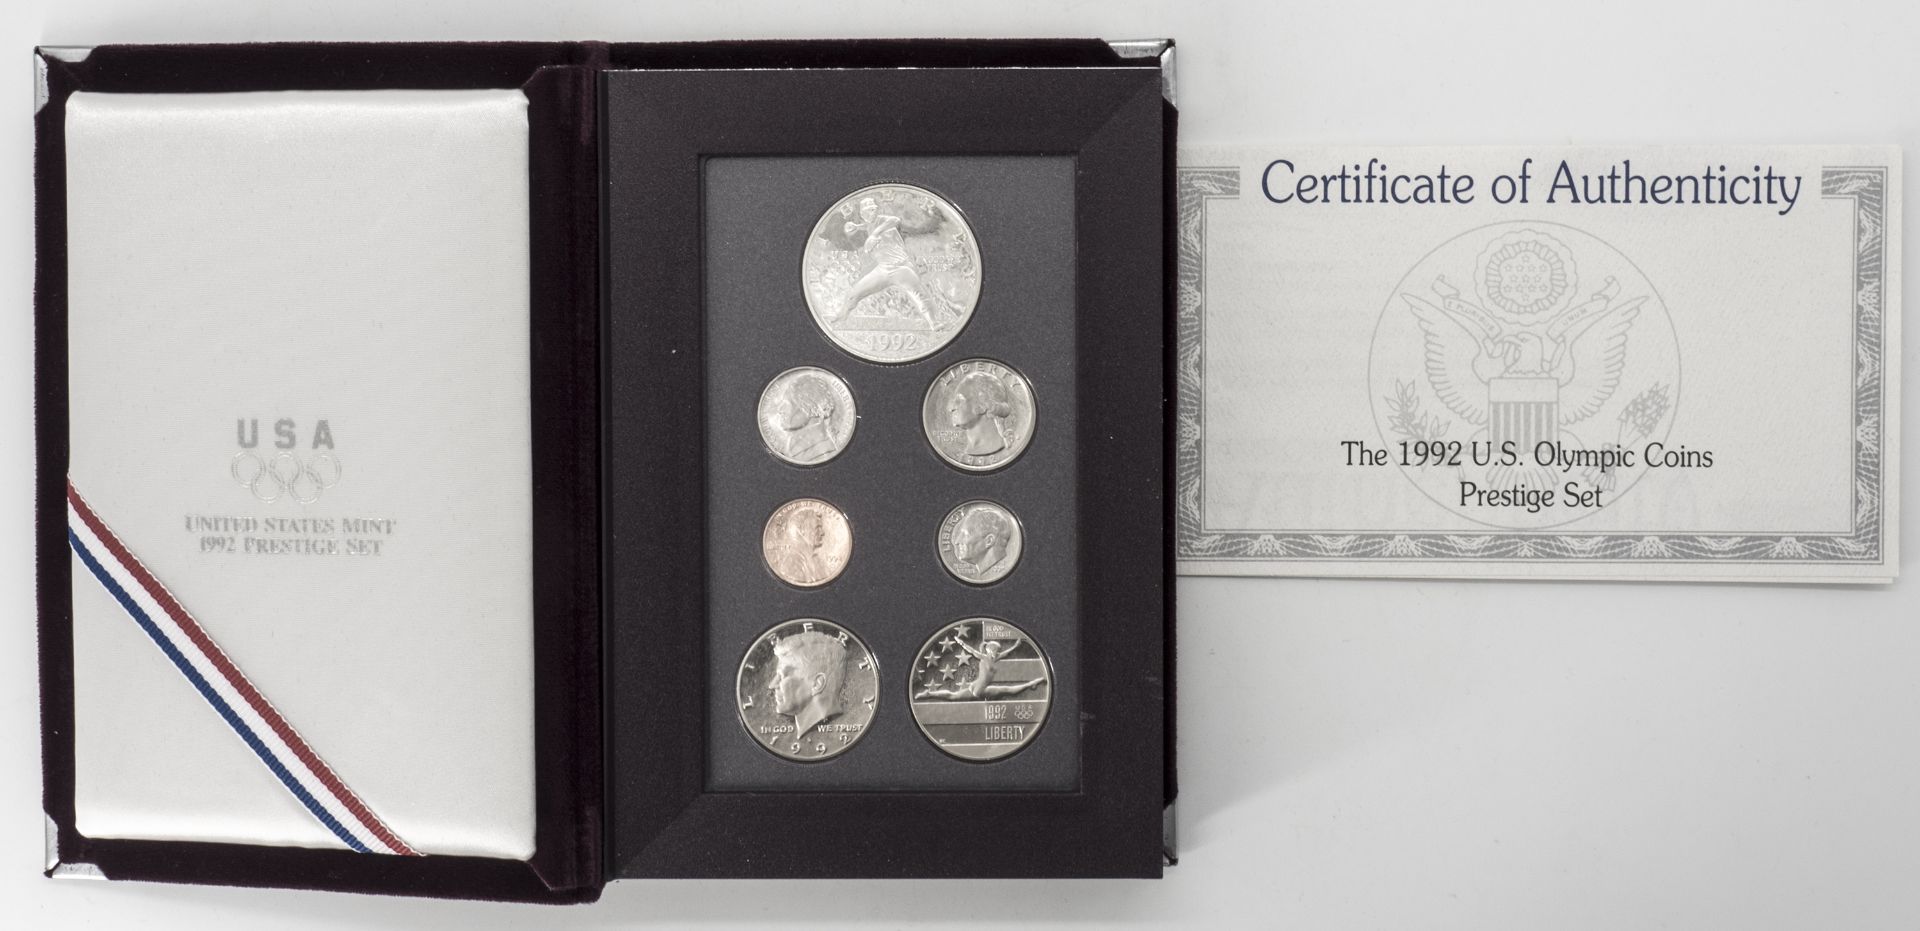 USA 1992, Prestige Set -Olympic Coins. Qualität: PP. Im Etui als Buch. mit Zertifikat. - Bild 3 aus 3